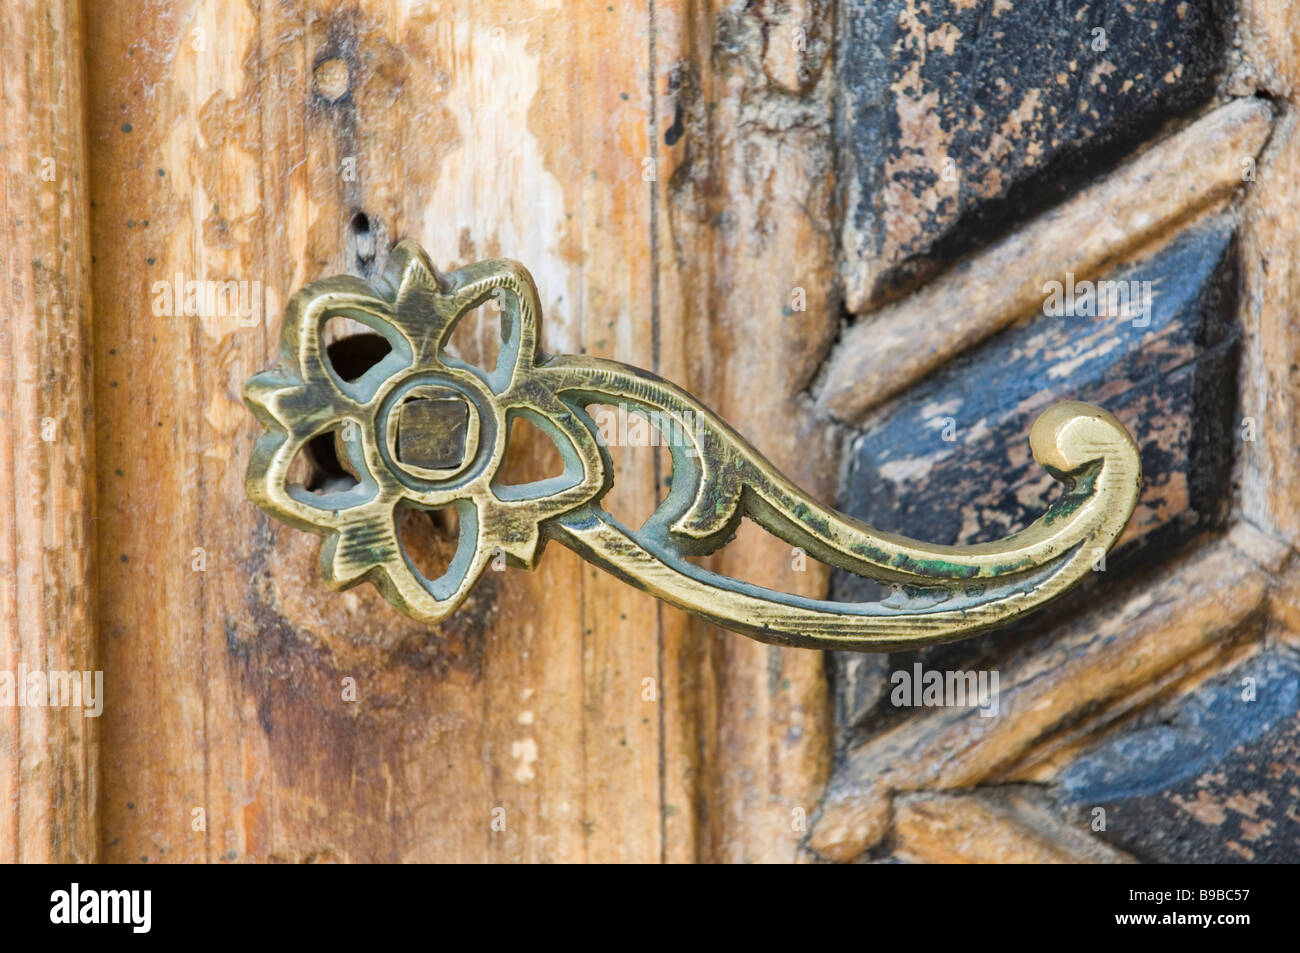 Poignée en laiton ouvragé sur une vieille porte en bois Beiteddine Liban Moyen-Orient Asie Banque D'Images